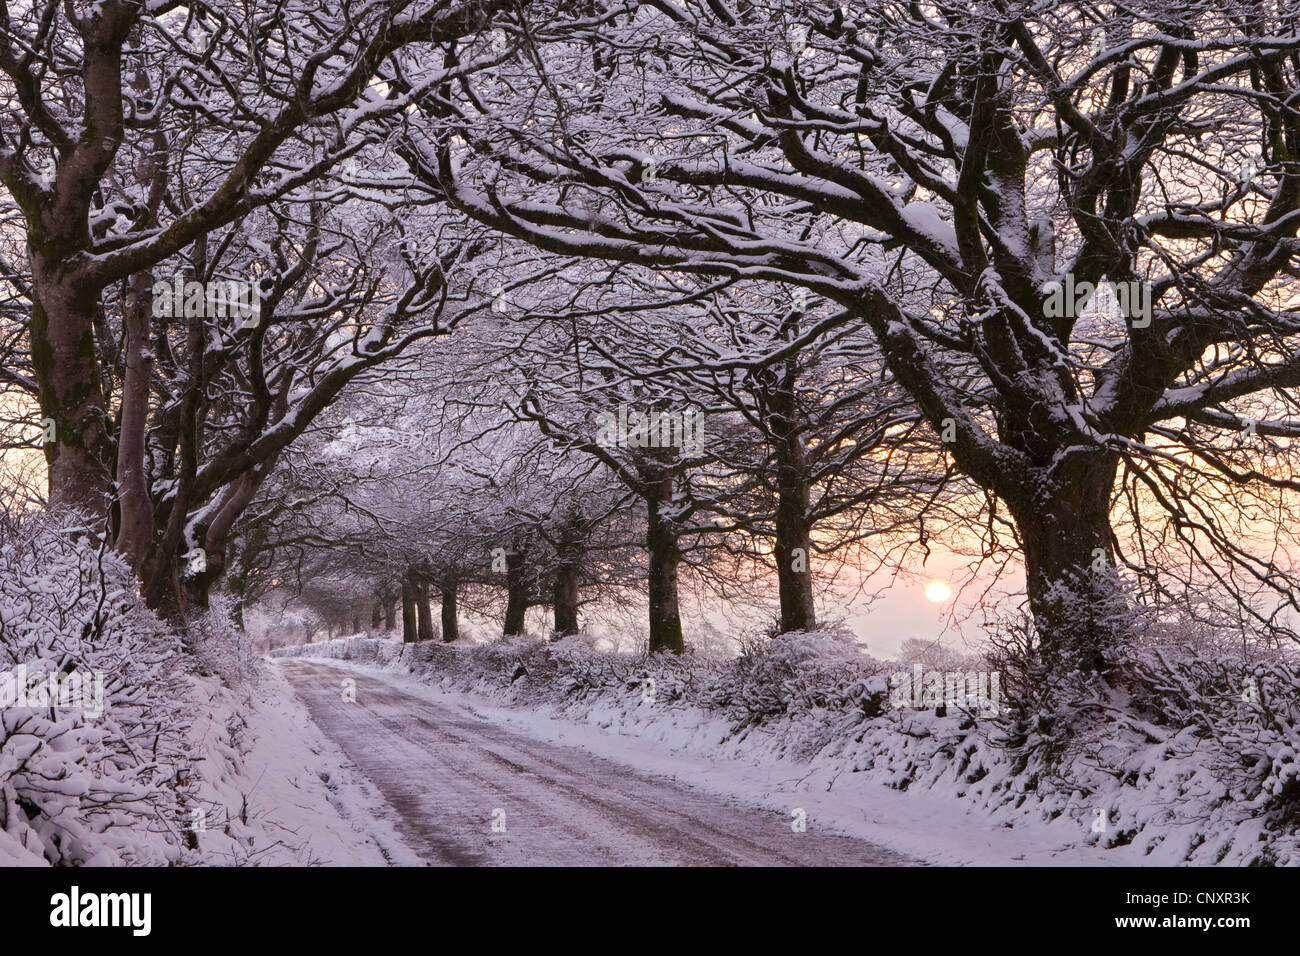 Route de campagne bordée d'arbres chargés de neige, Exmoor, Somerset, Angleterre. L'hiver (Janvier) 2012. Banque D'Images